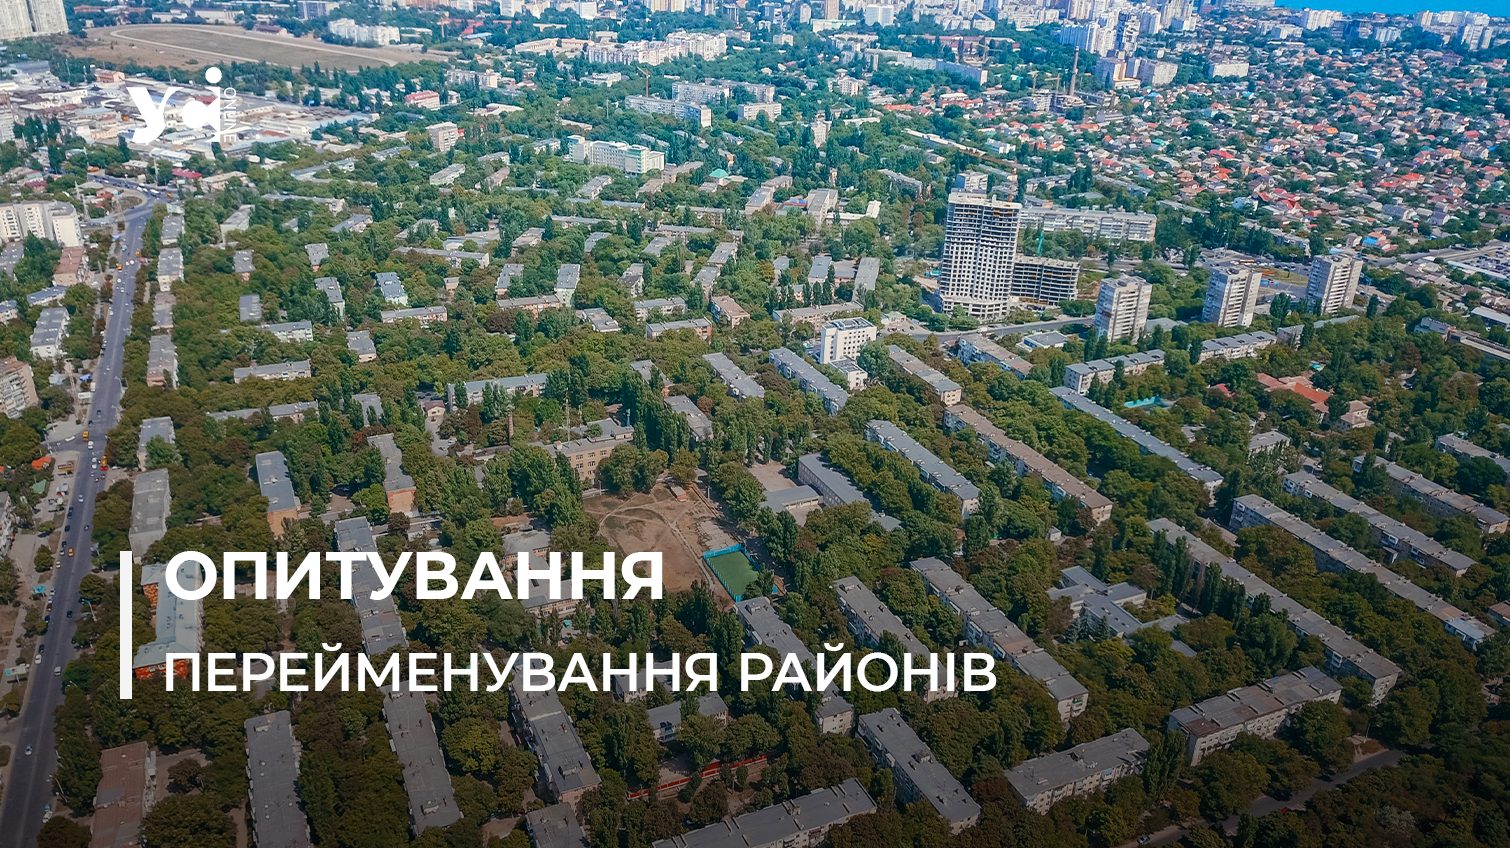 Перейменування районів: в Одесі розпочали опитування, як взяти участь «фото»